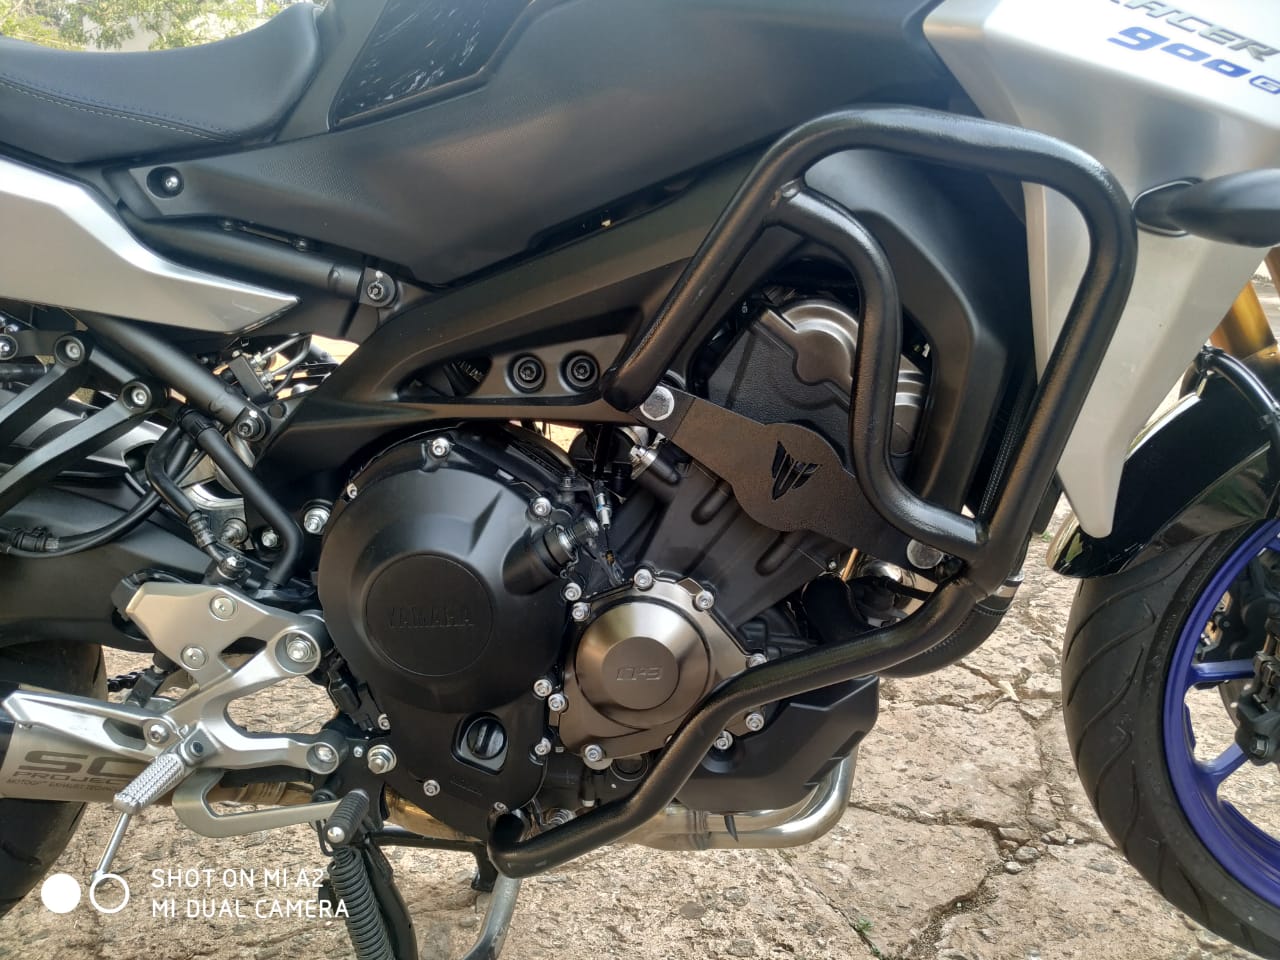 Protetor de Motor e Carenagem Tracer 900 GT Yamaha moto Tracer900 